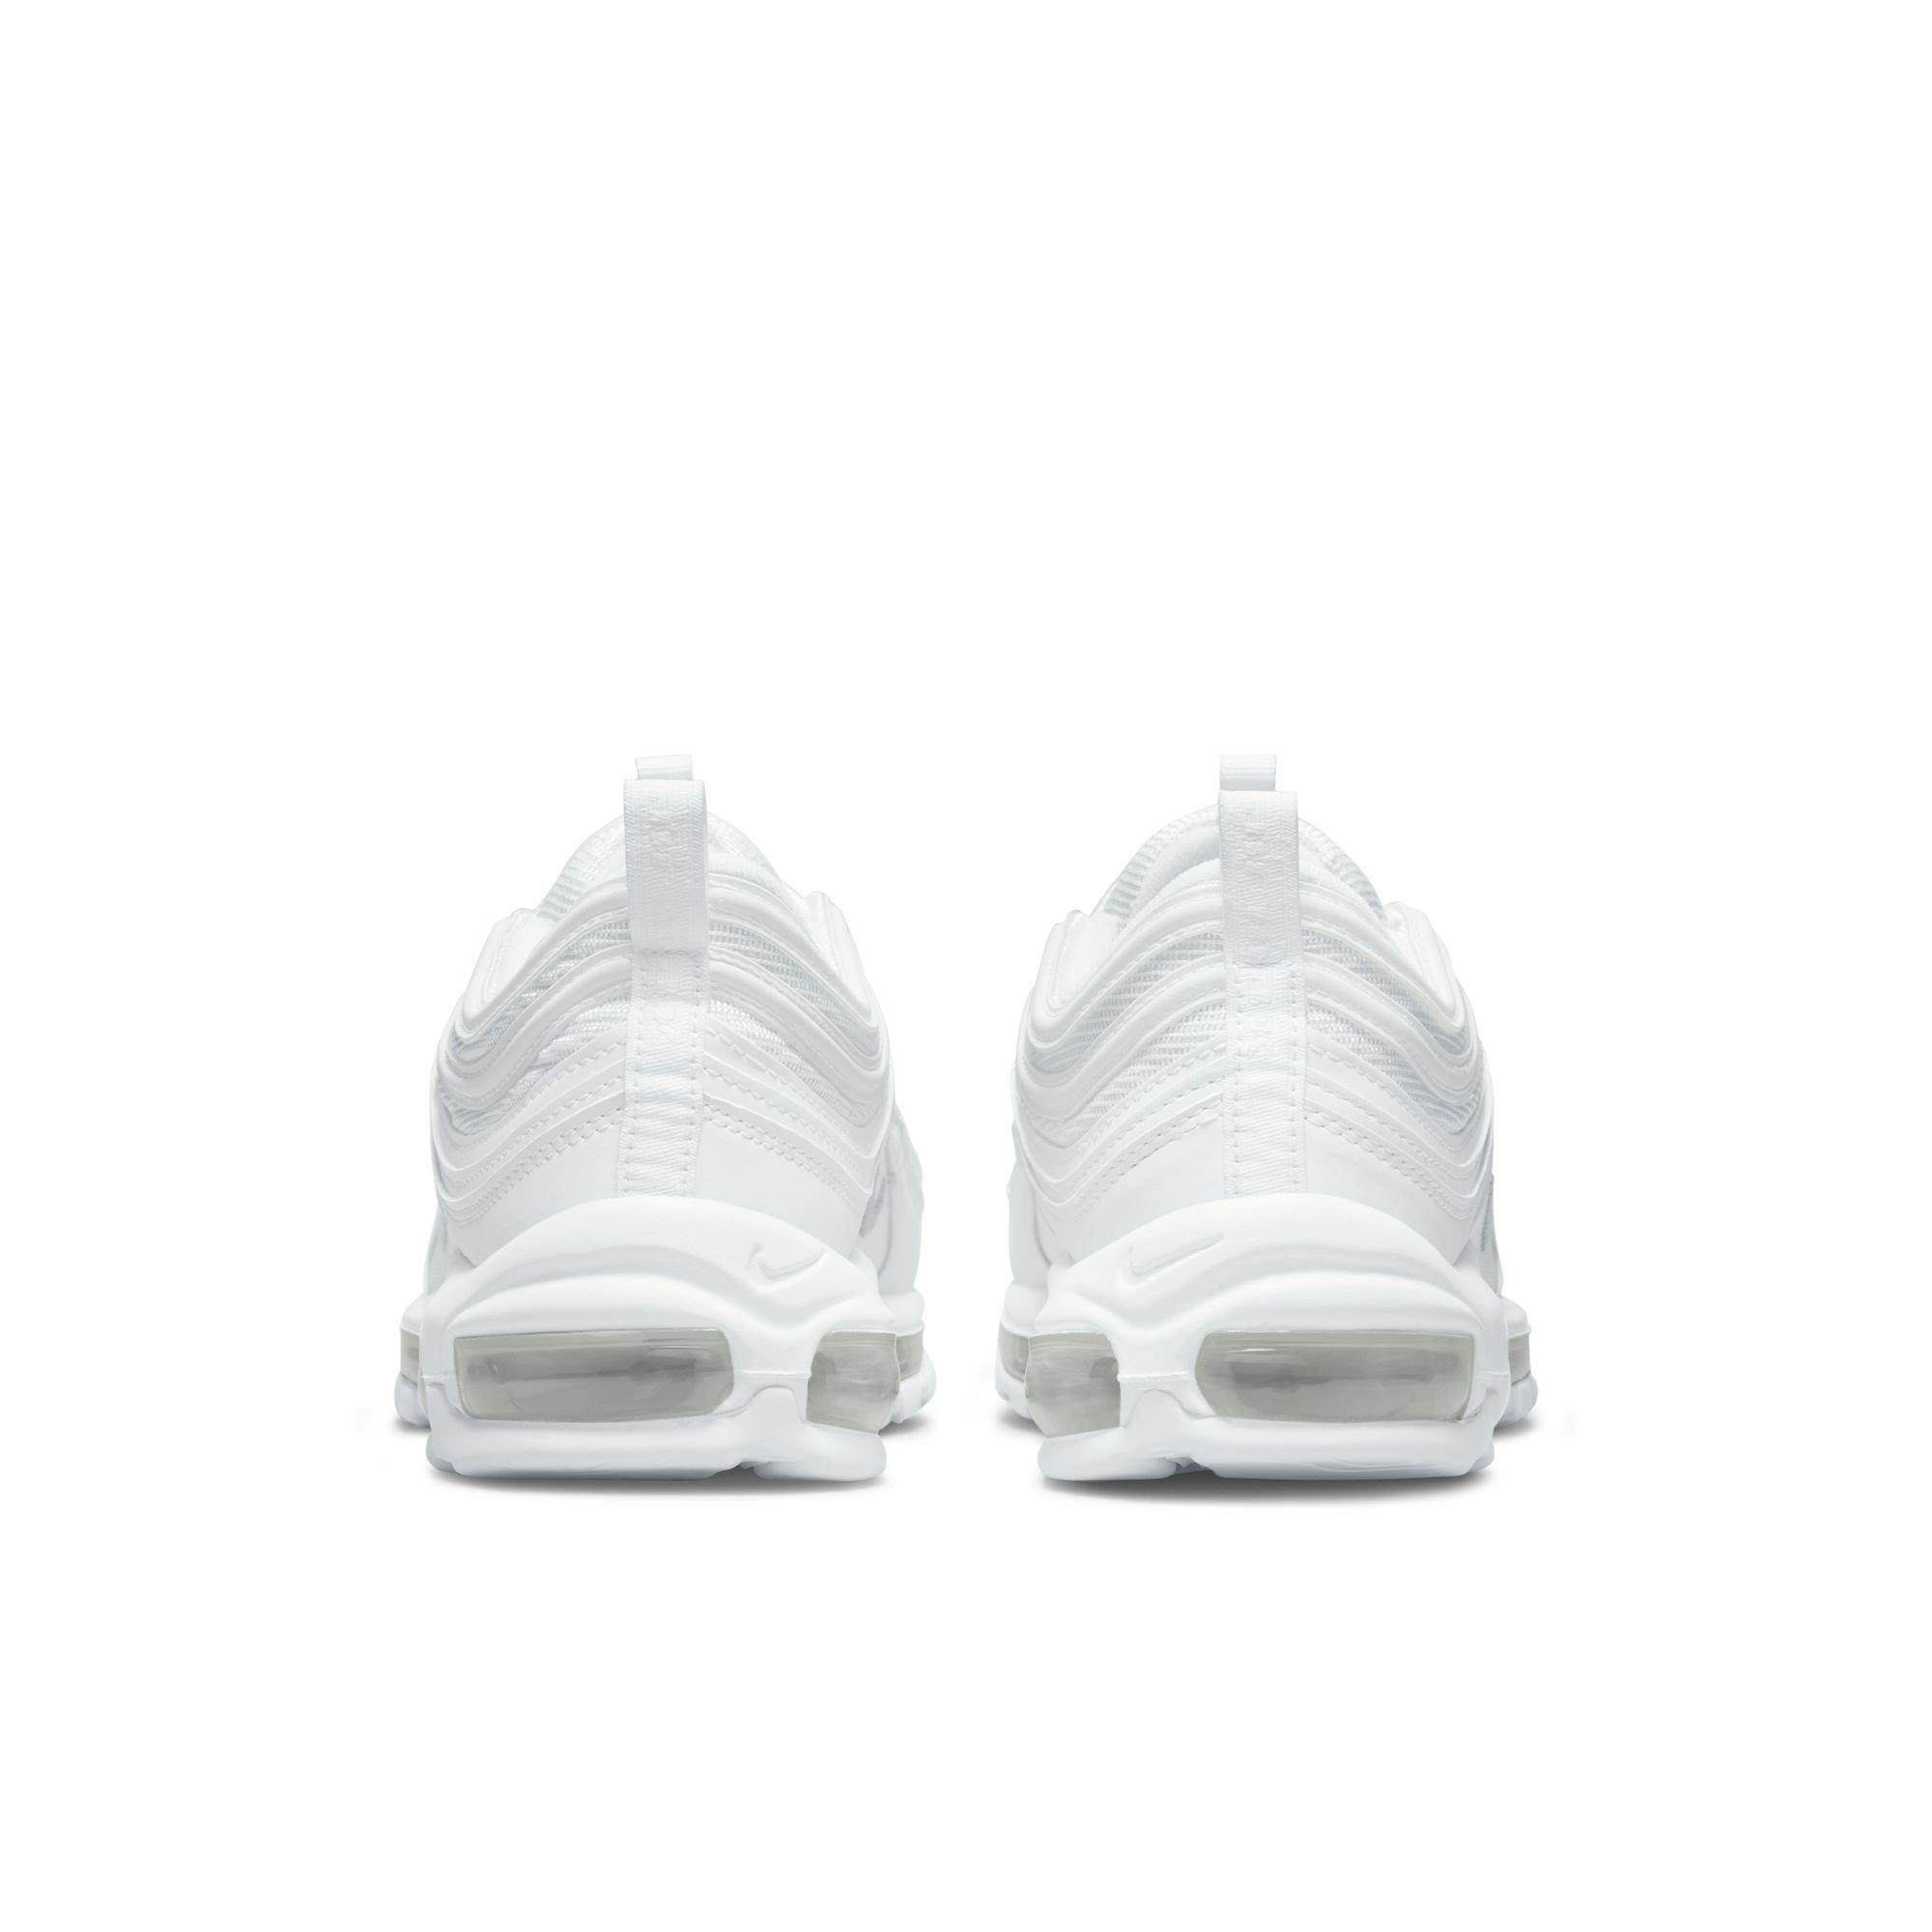 Nike Air Max 97 Triple White - Size 15 Men